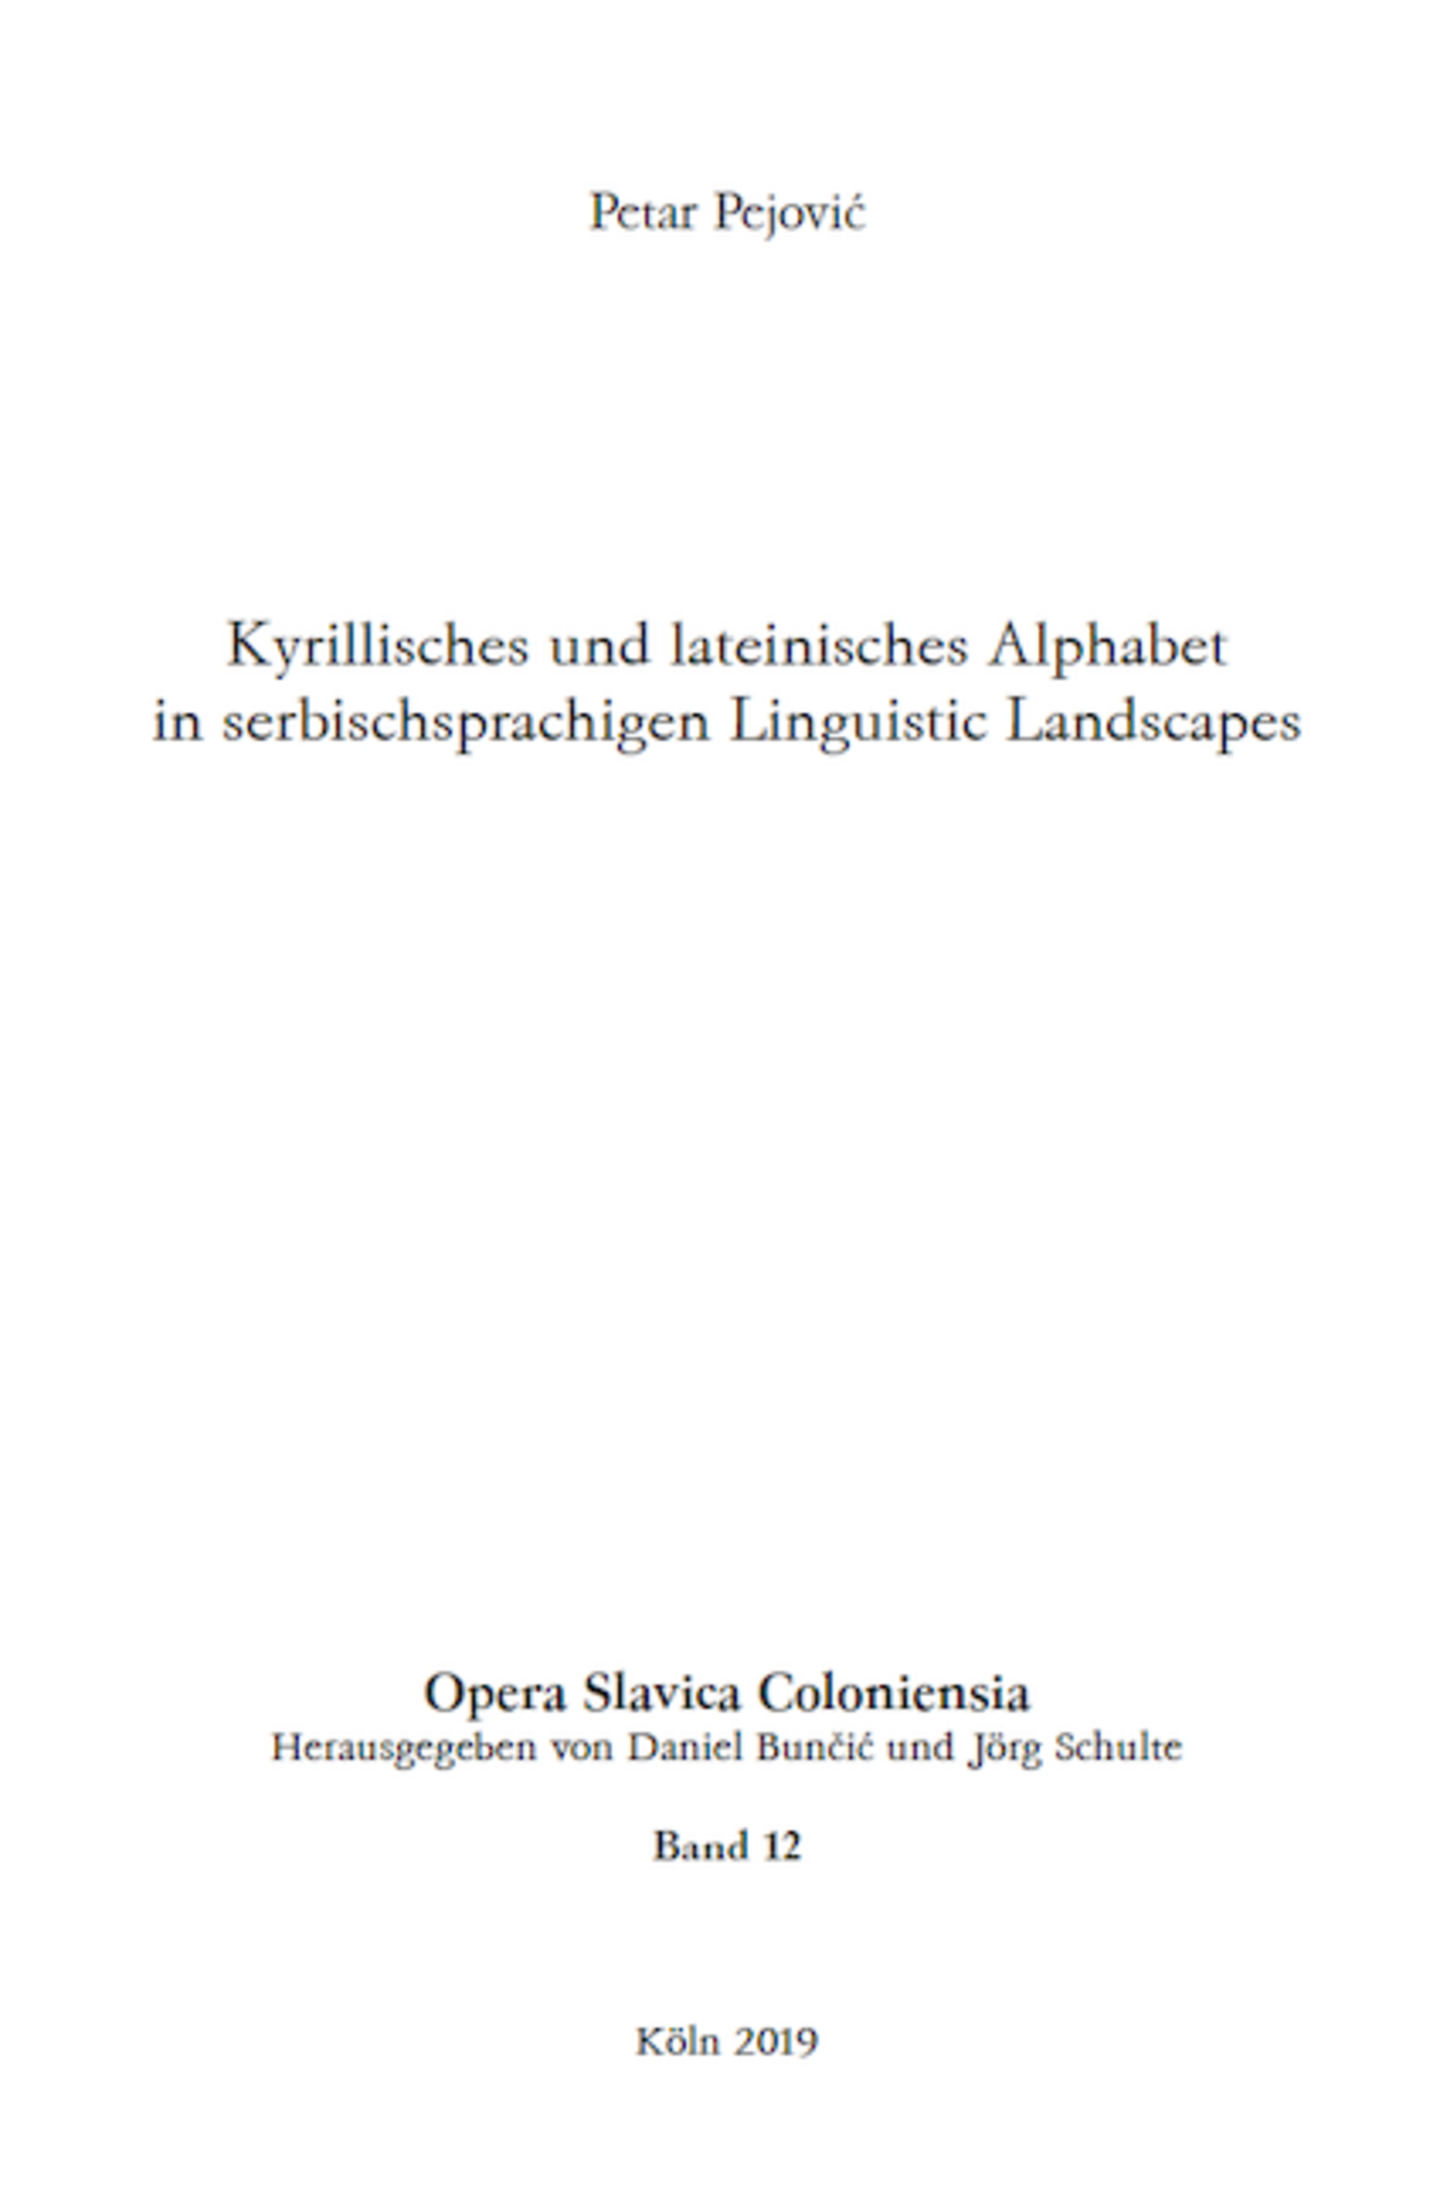 Opera Slavica Coloniensia, Bd. 12: Petar Pejović (2019) Kyrillisches und lateinisches Alphabet in serbischsprachigen Linguistic Landscapes